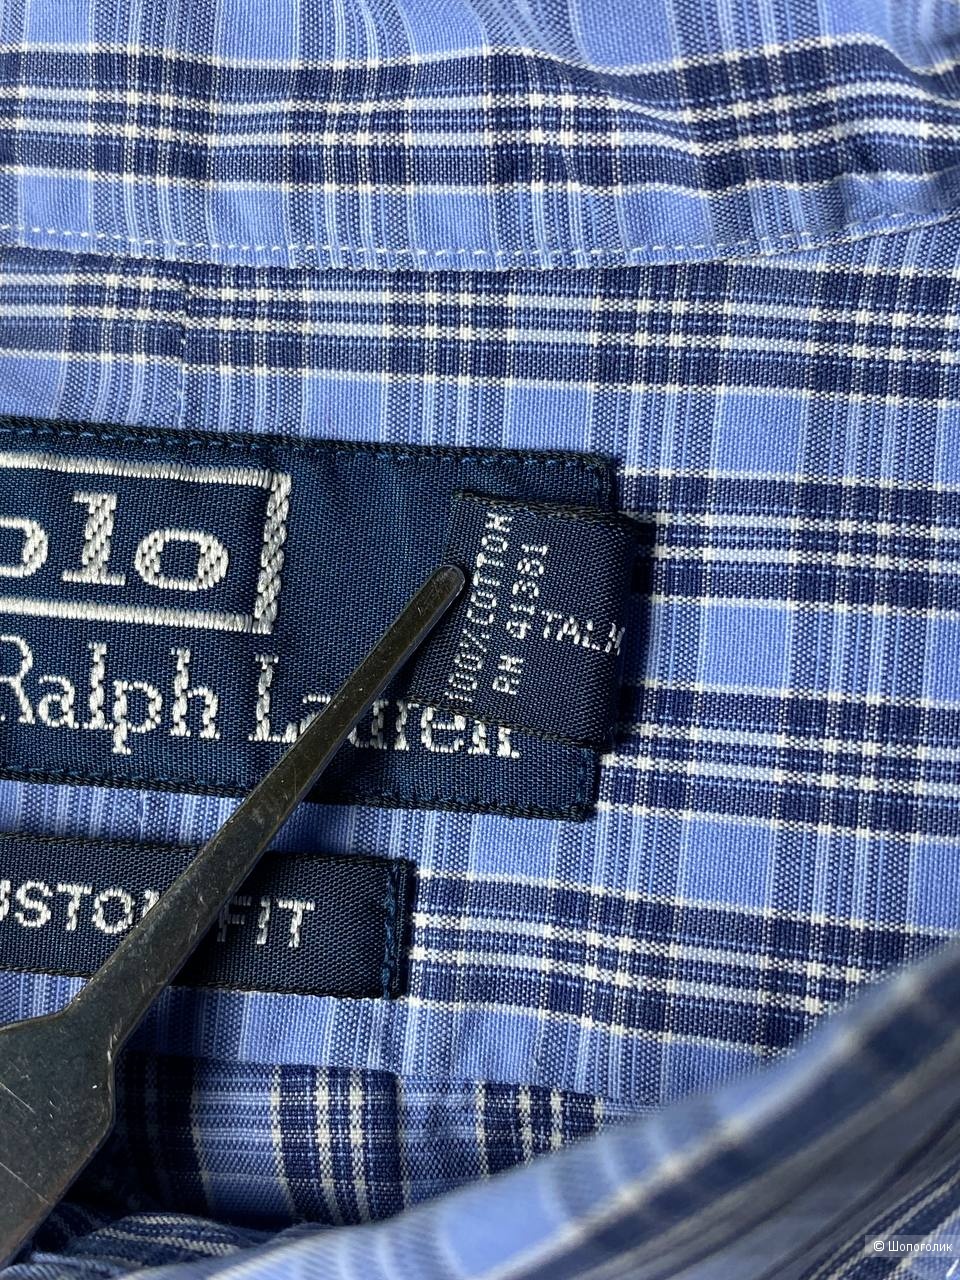 Рубашка с короткими рукавами Ralph Lauren, размер: M